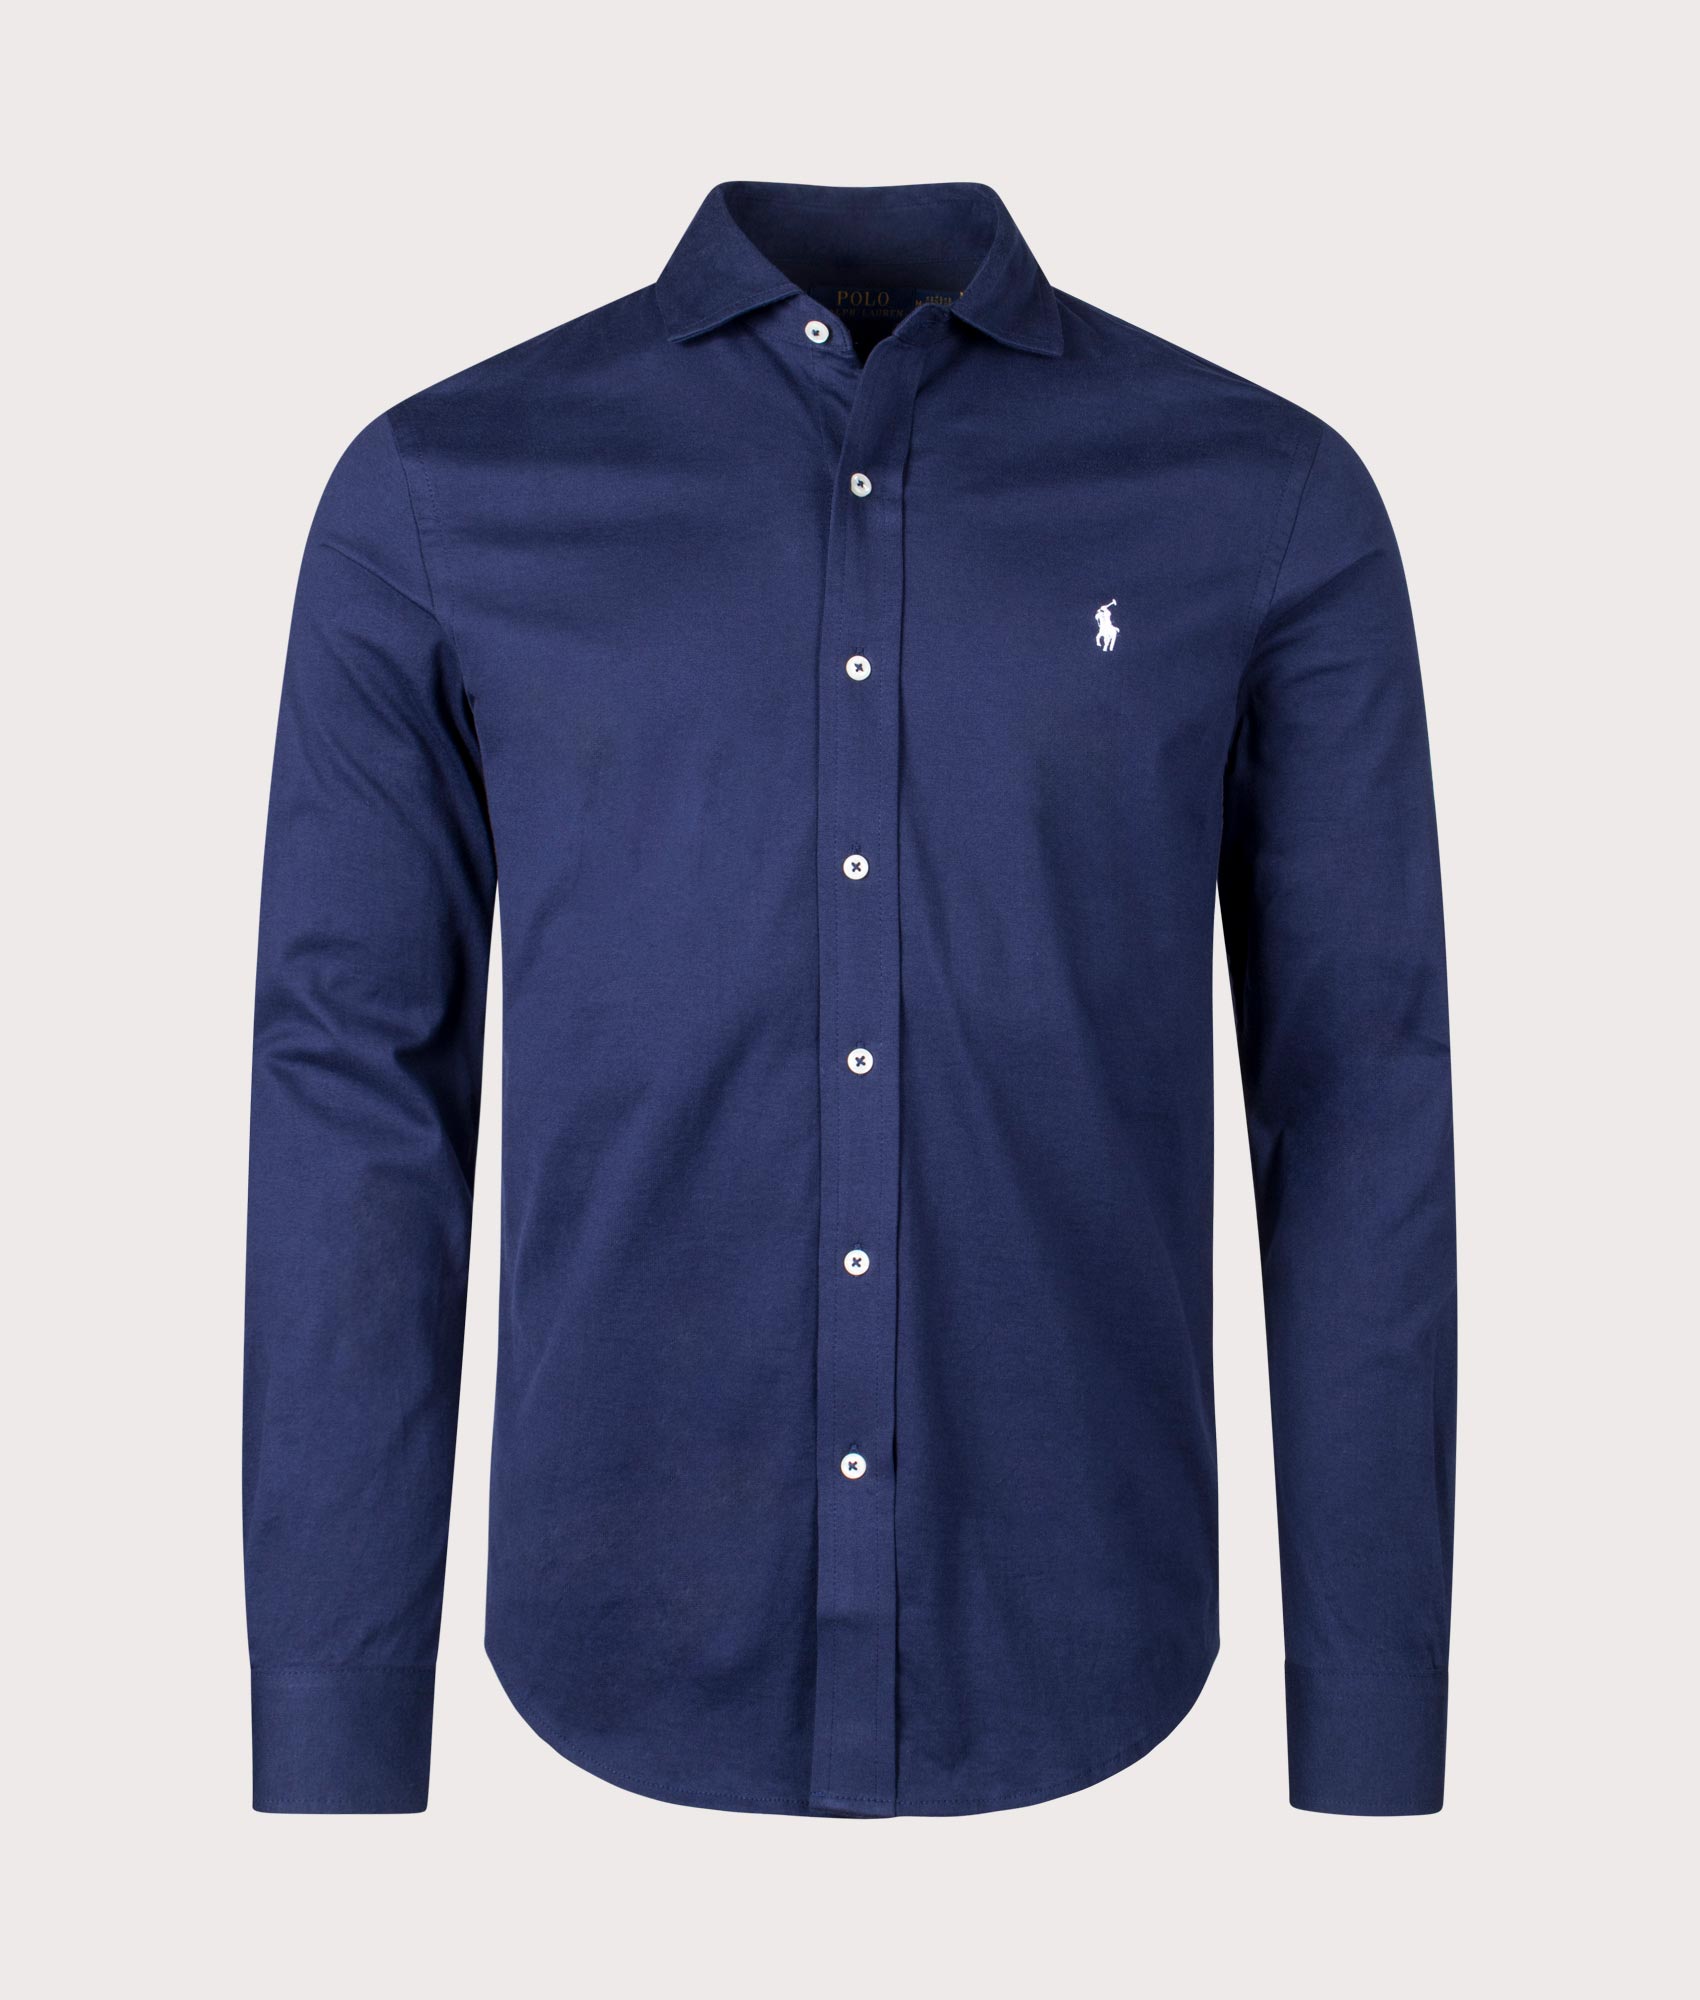 Polo Ralph Lauren Mens Jersey Shirt - Colour: 003 Cruise Navy - Size: XXL